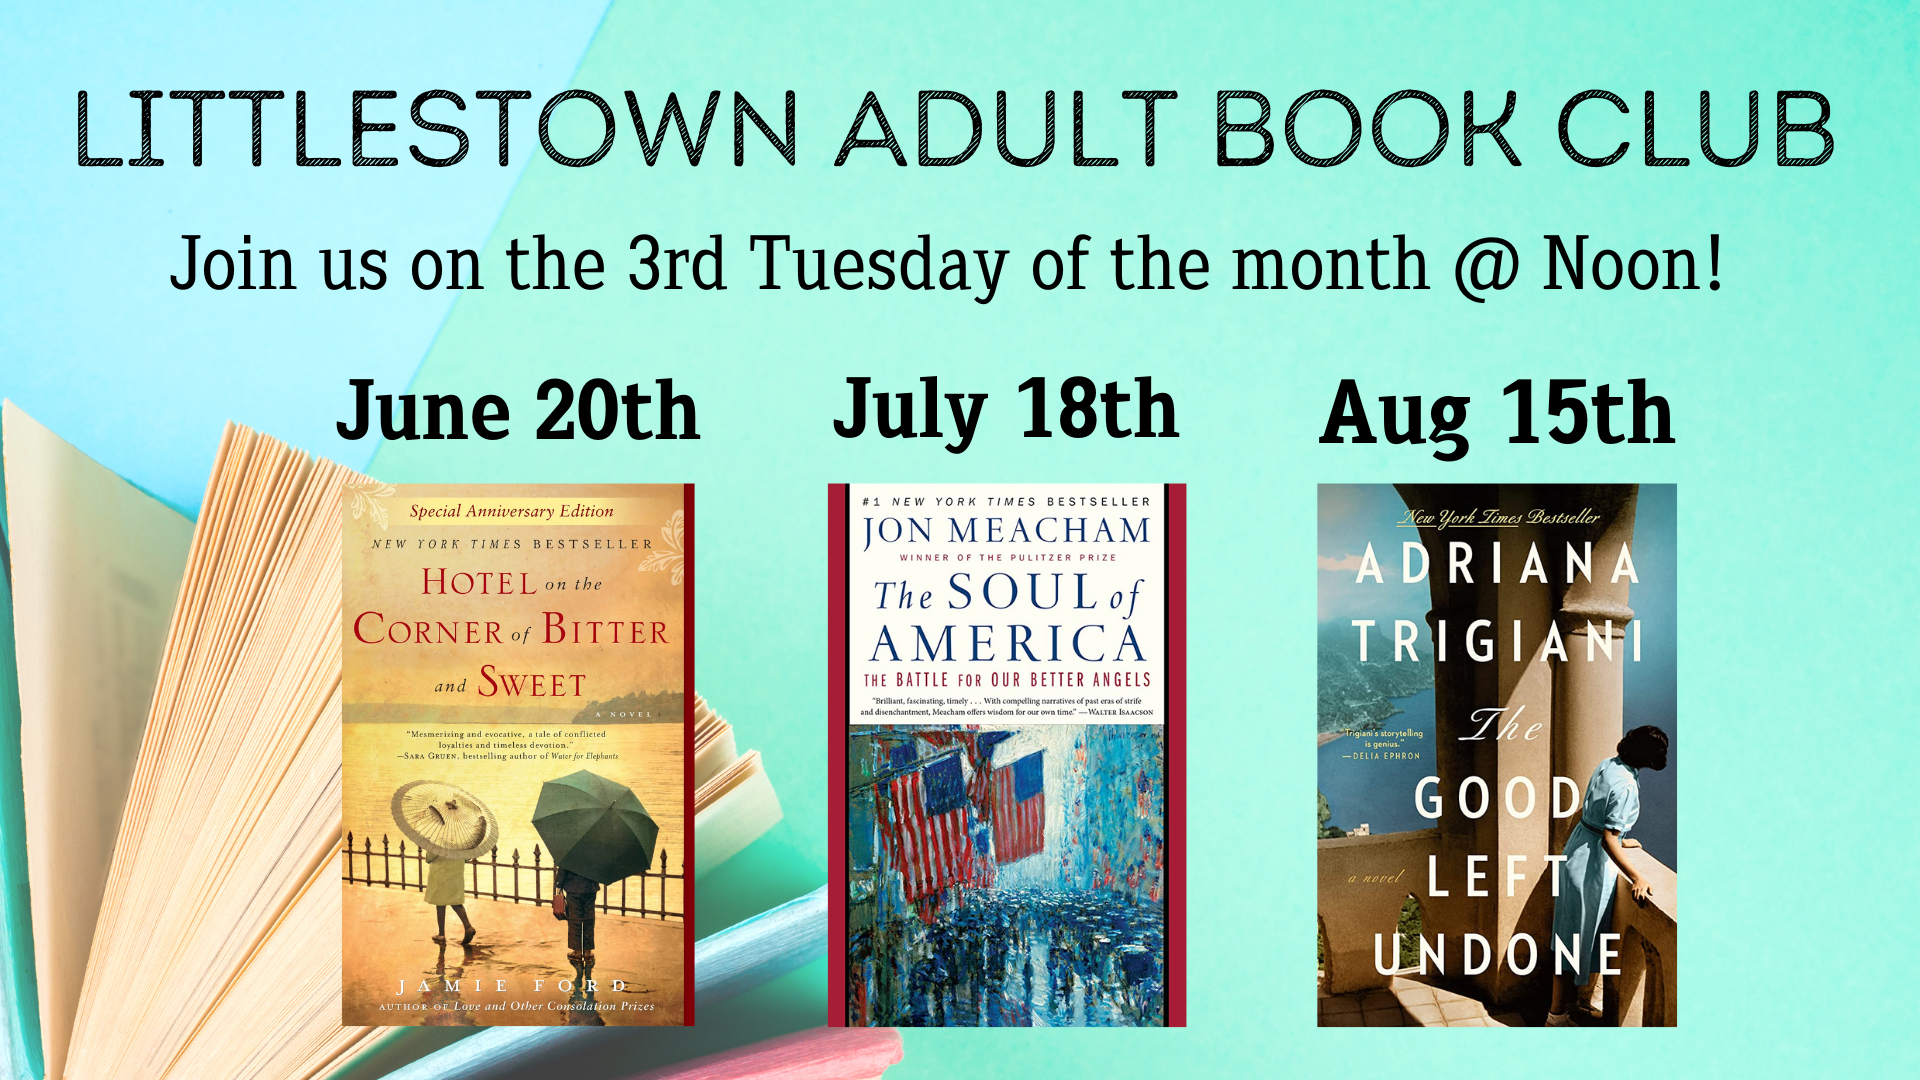 Littlestown Adult Book Club Summer